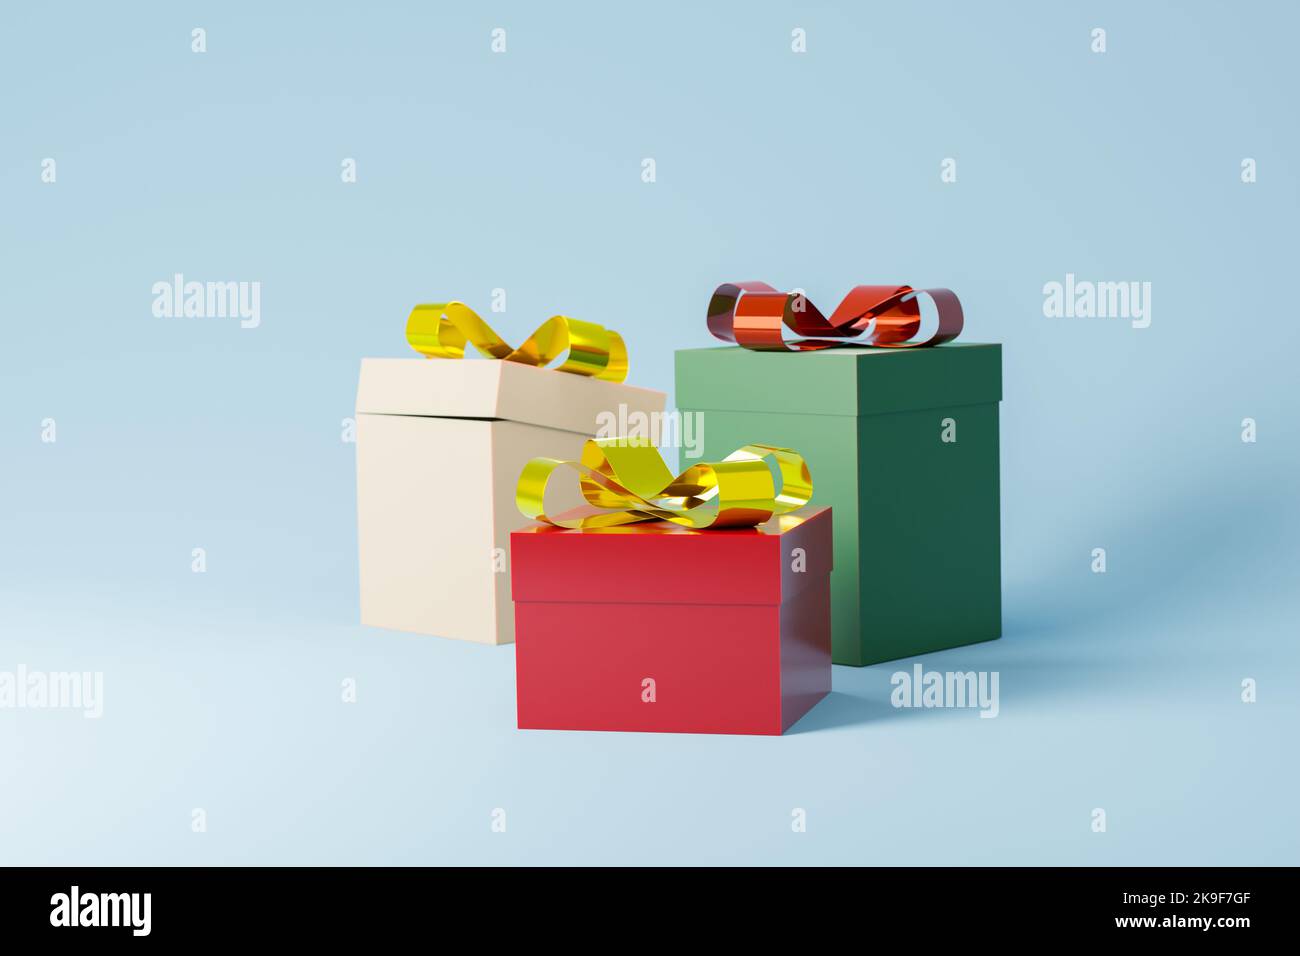 3d rendering di scatole regalo con nodo d'arco dorato. Vacanze invernali, illustrazione natalizia dei regali con spazio di testo, sfondo blu Foto Stock